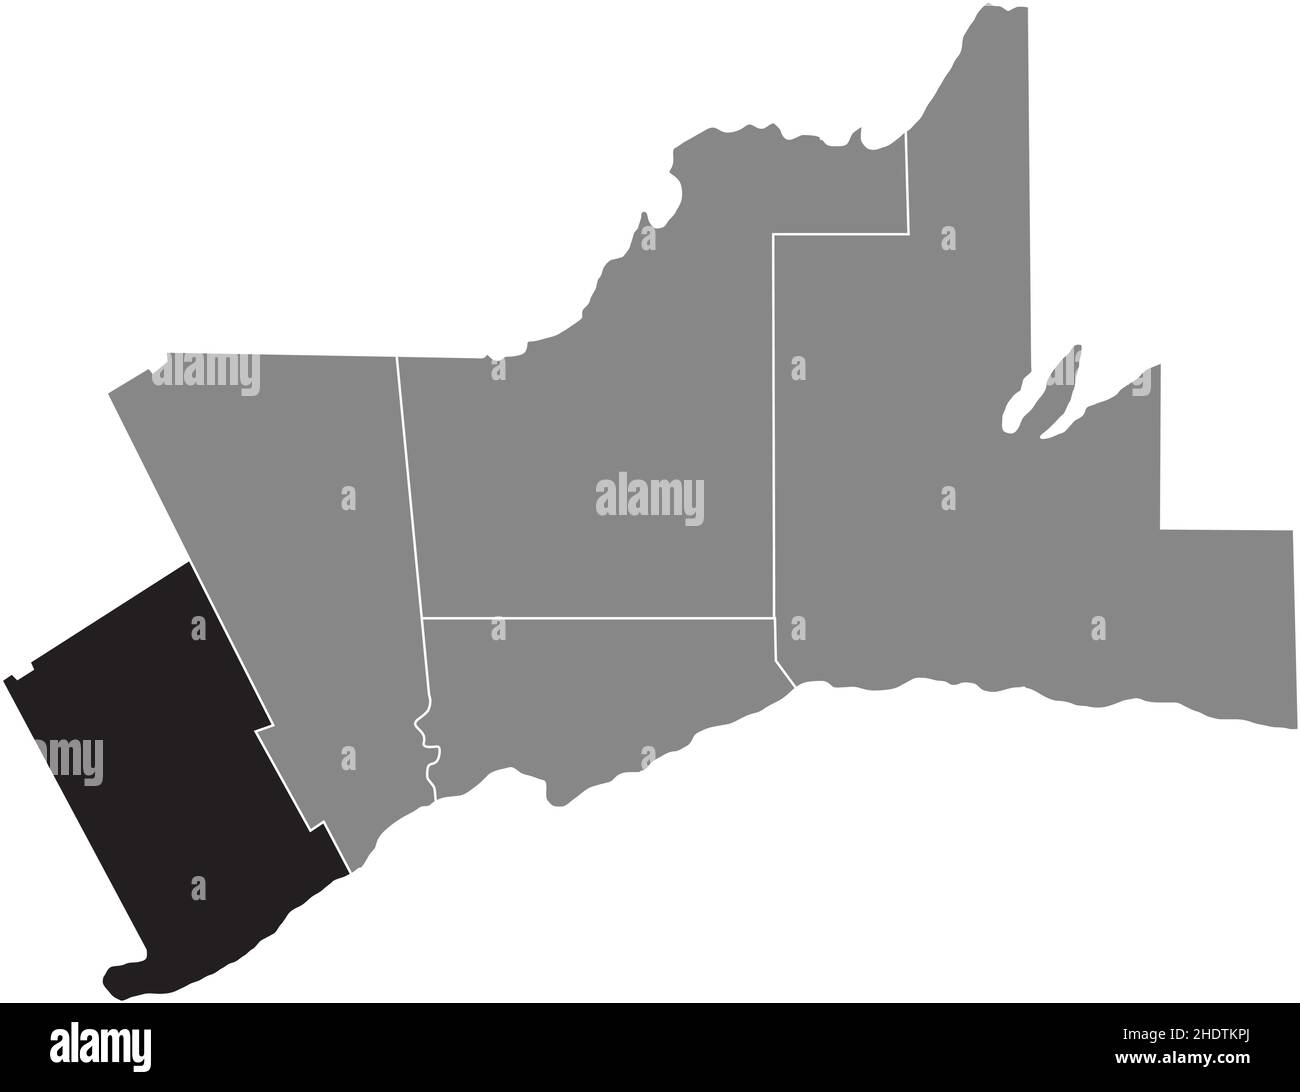 Schwarz flach leer hervorgehoben Locator Karte der REGION HALTON innerhalb der grauen administrativen Karte des Großraums Toronto Stock Vektor